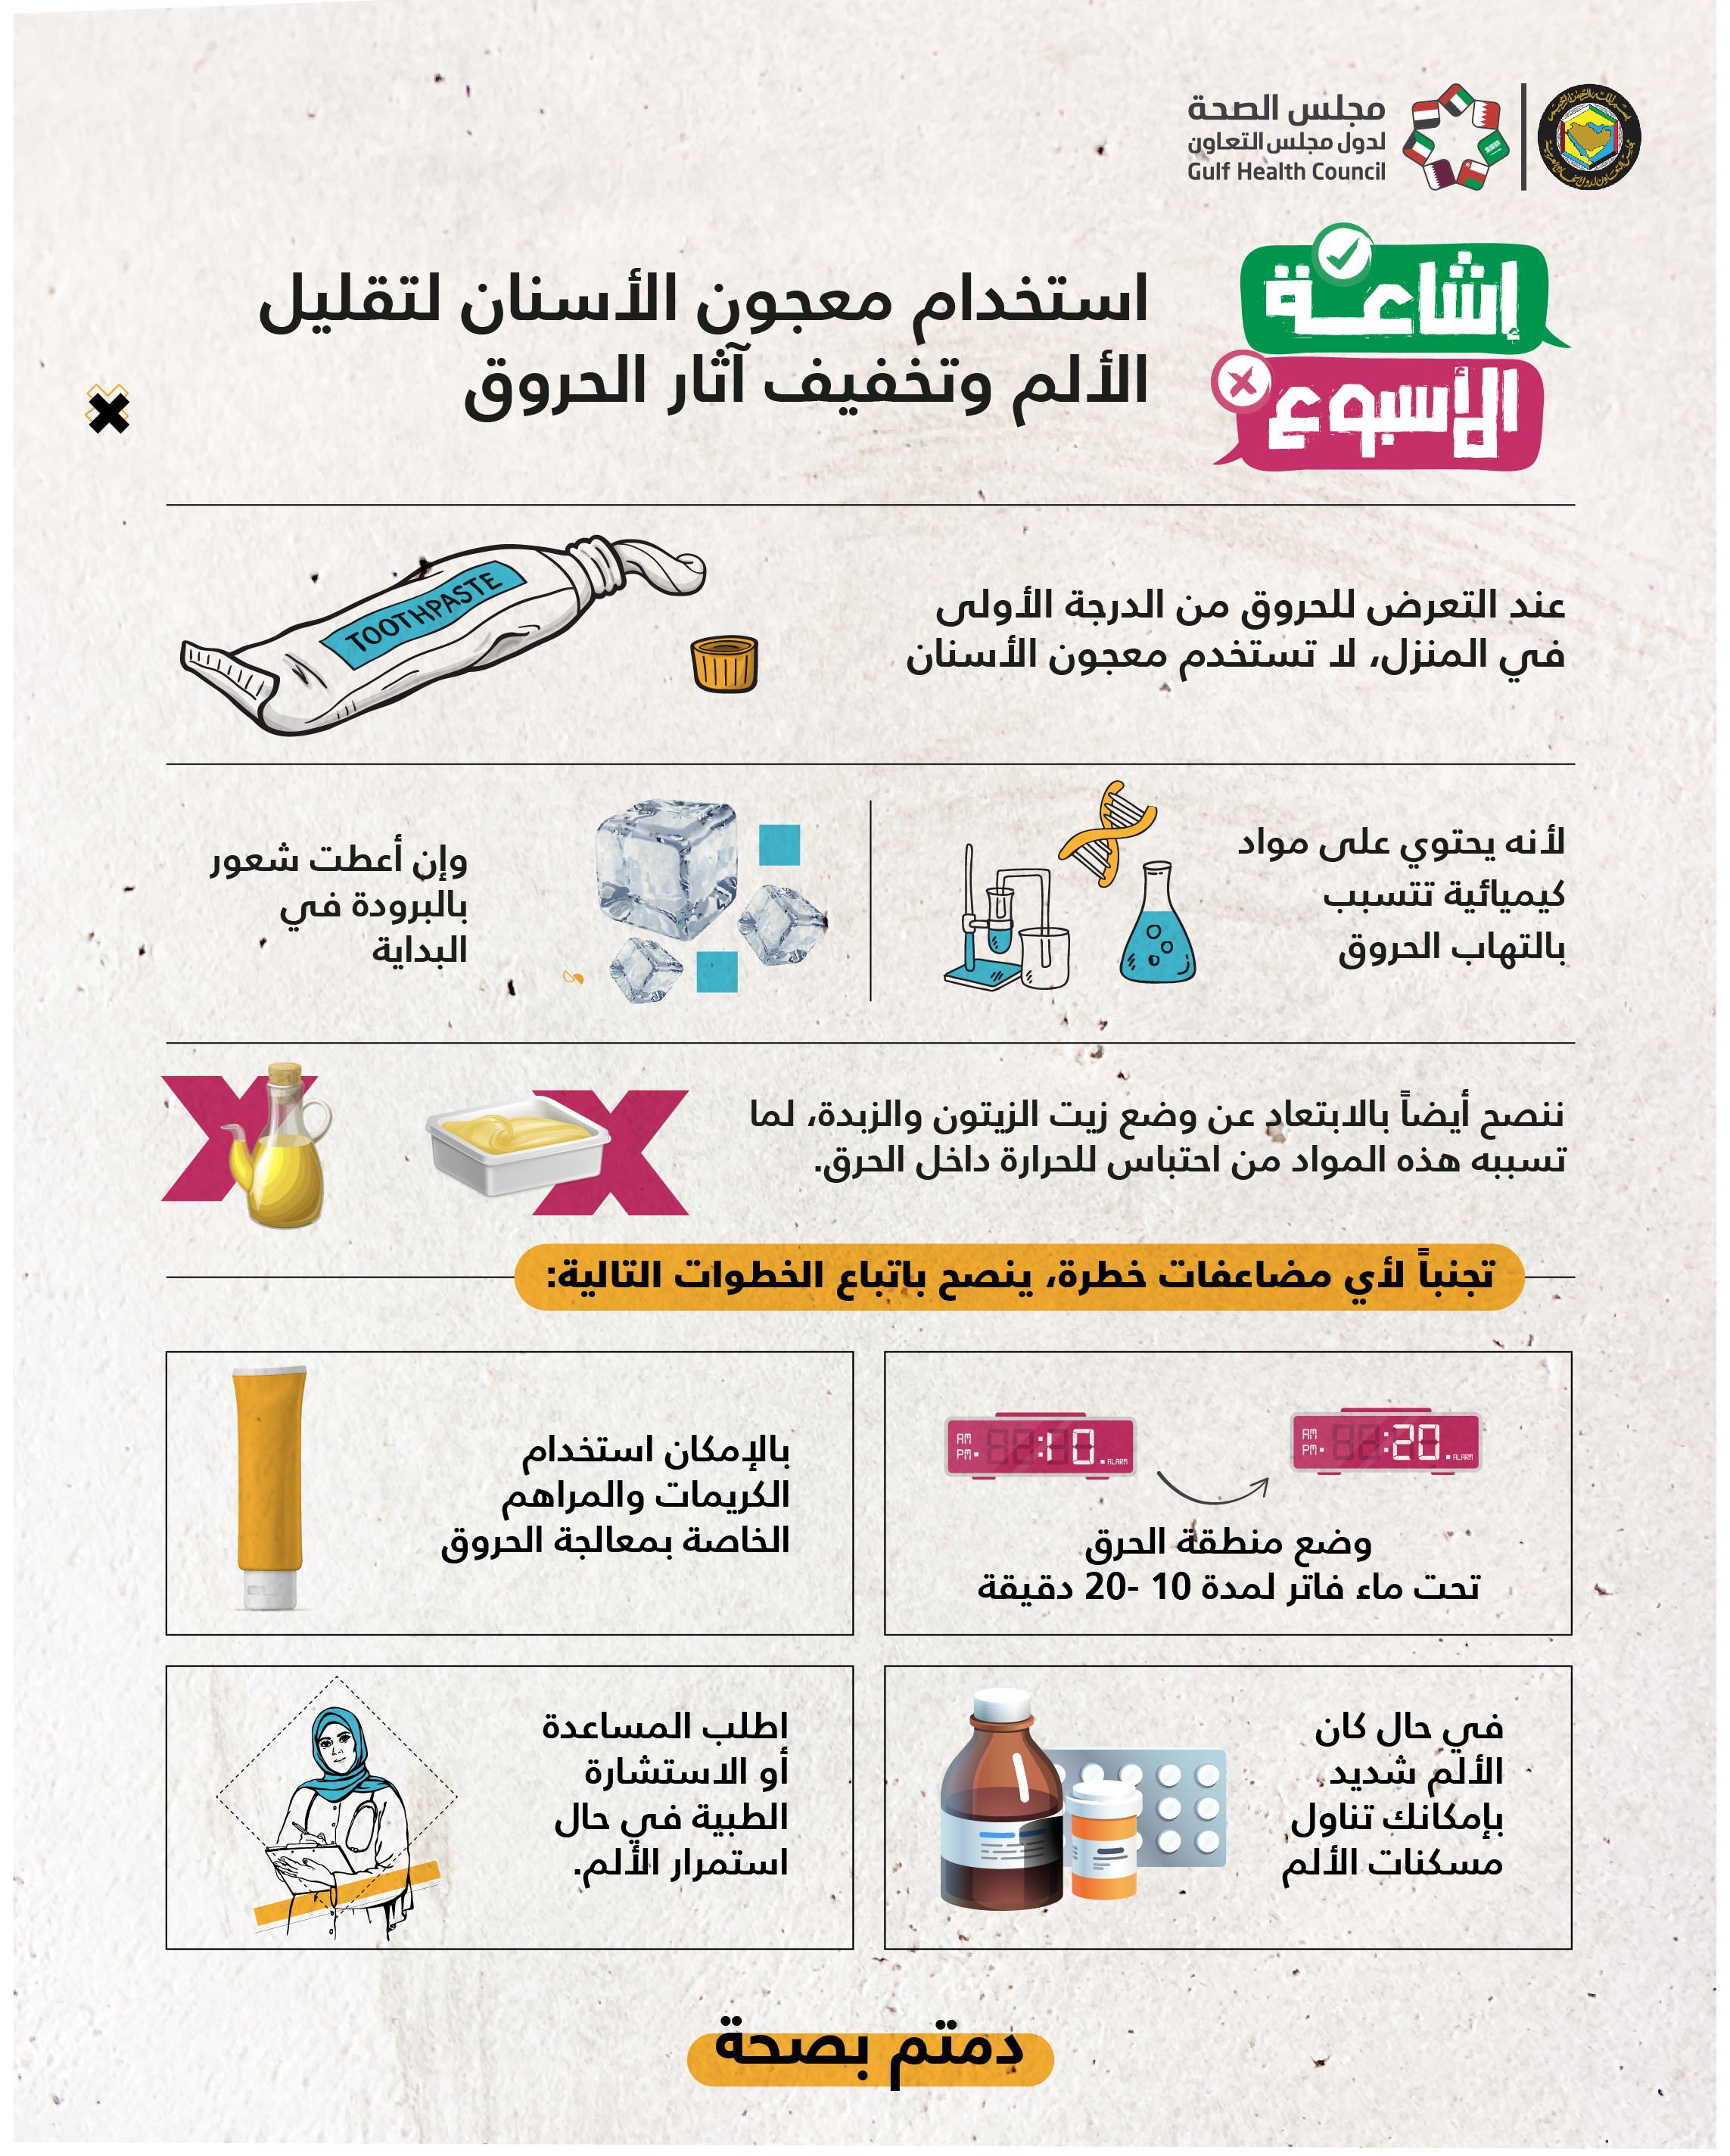 " #الصحة_الخليجي" يحذّر من استخدام معجون الأسنان وزيت الزيتون على الحروق